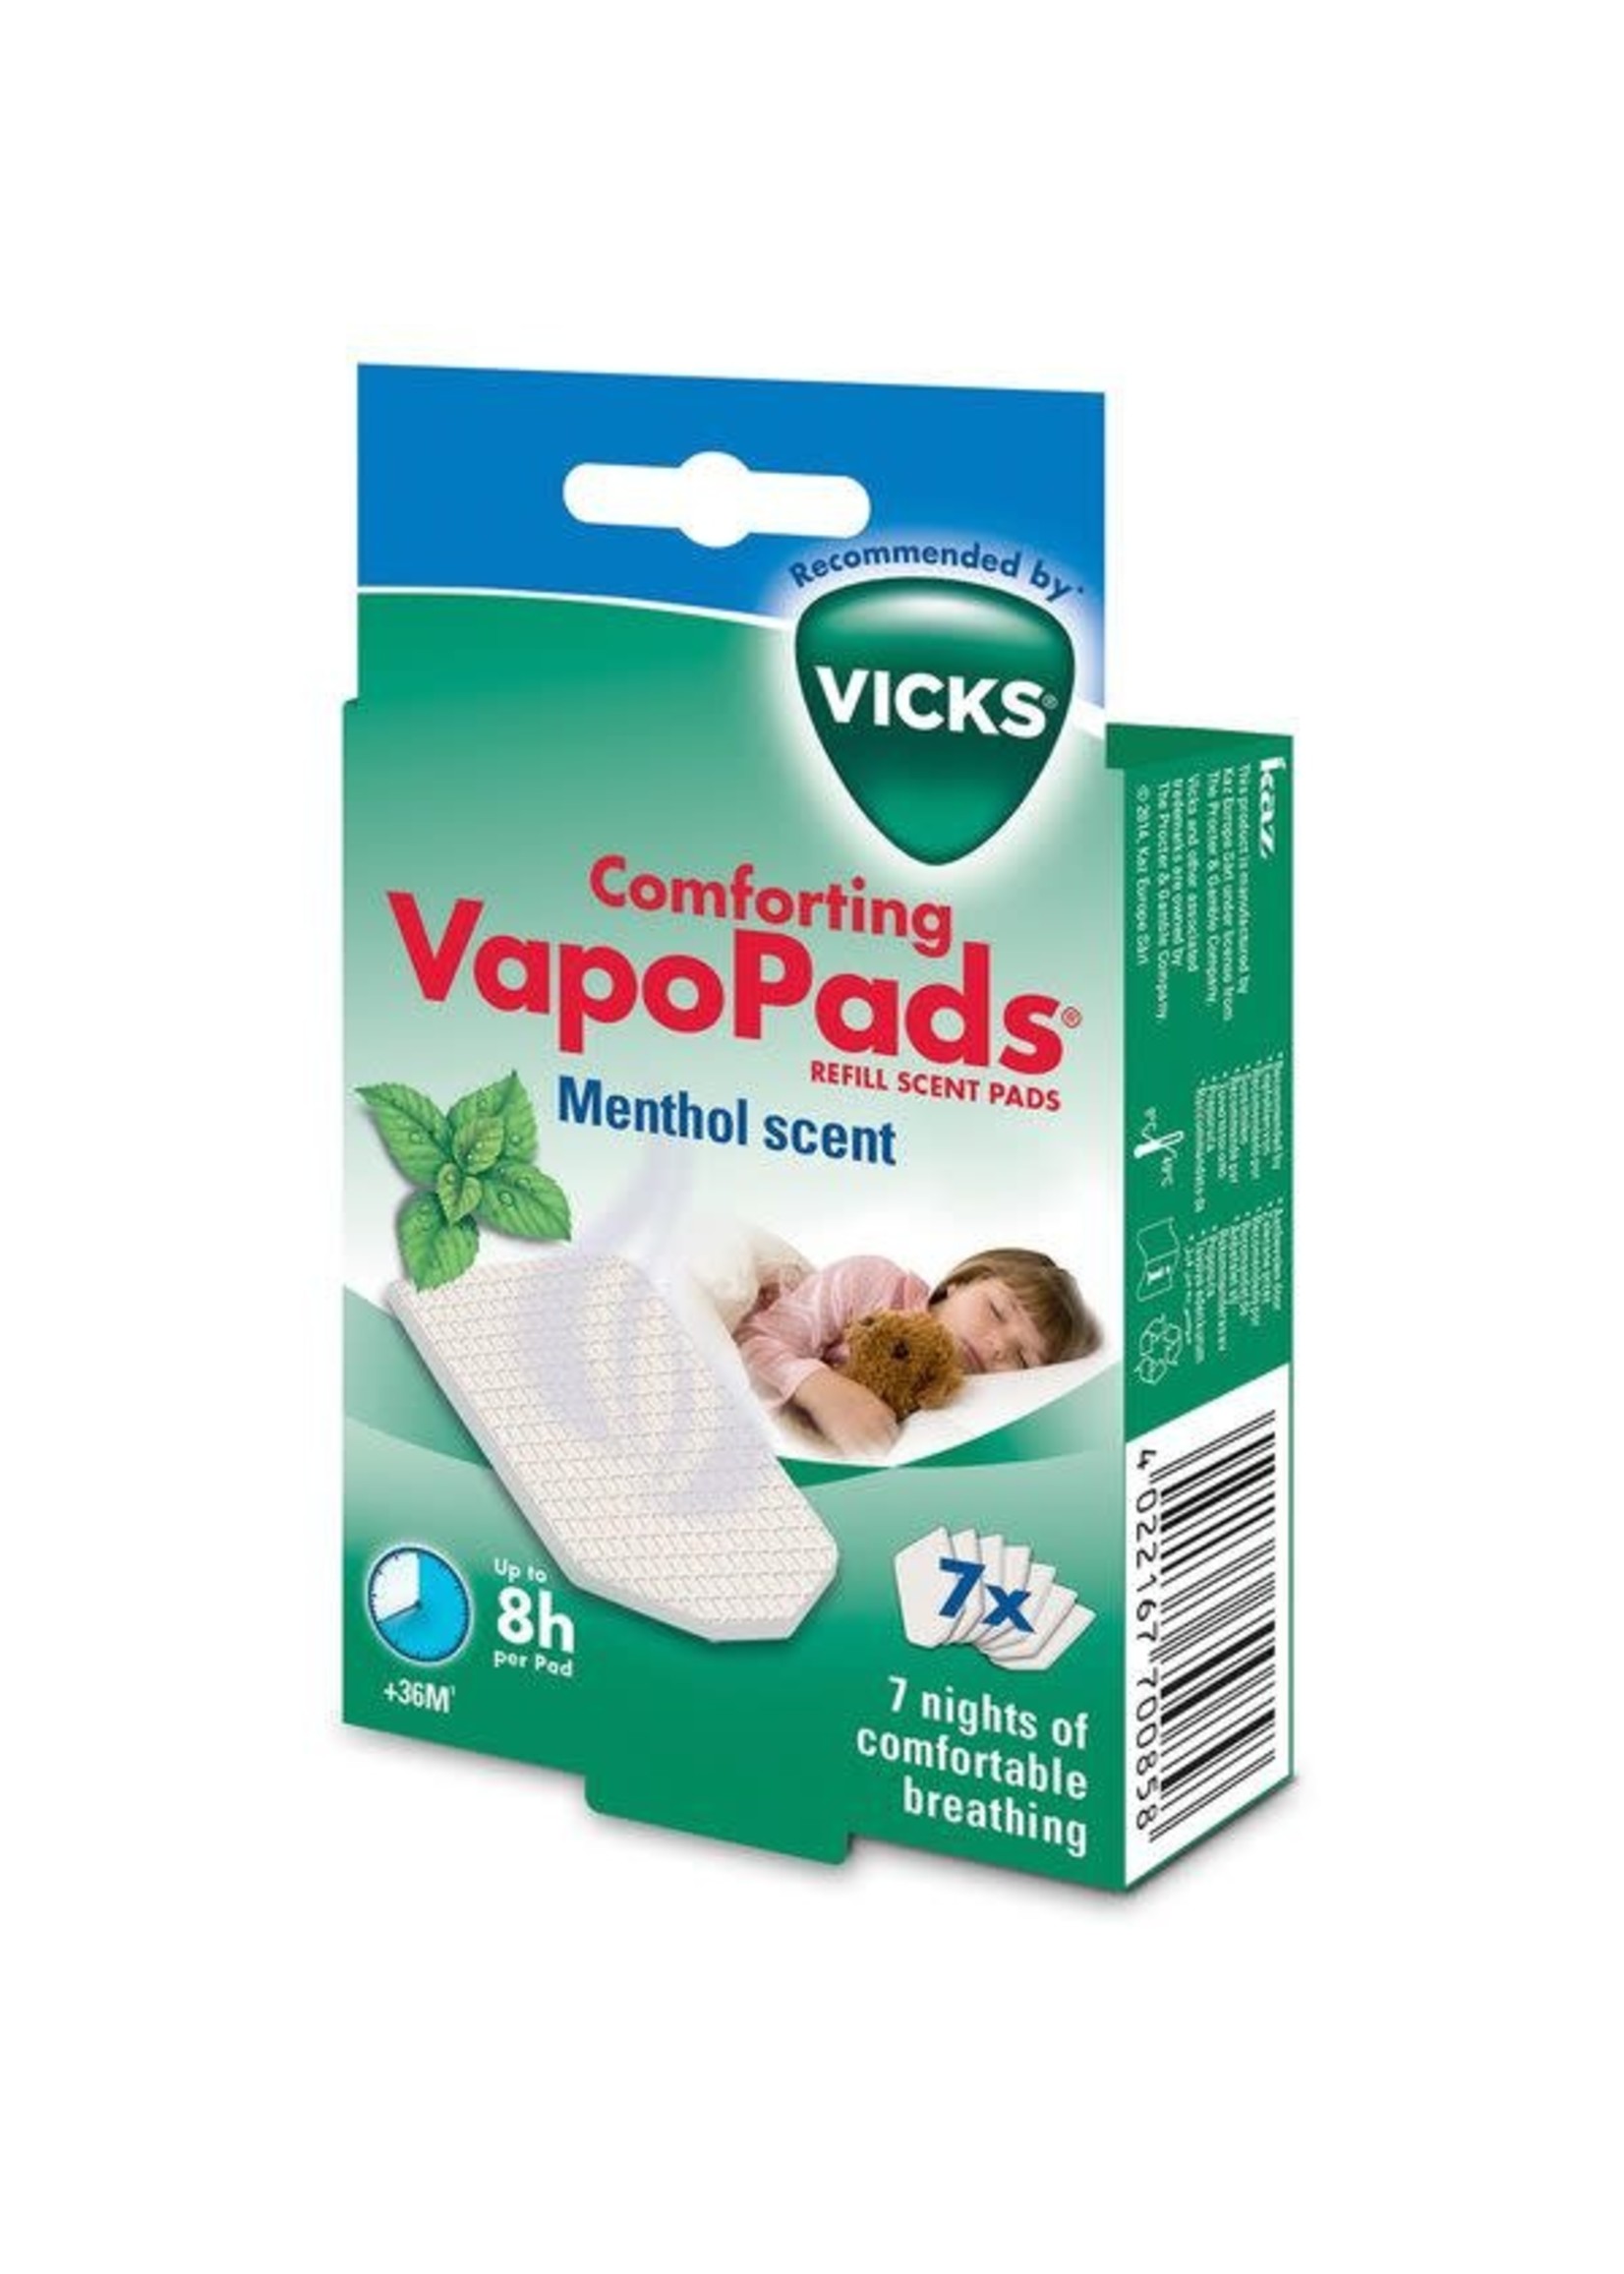 Vicks Vicks Vapo Pads (7) Menthol